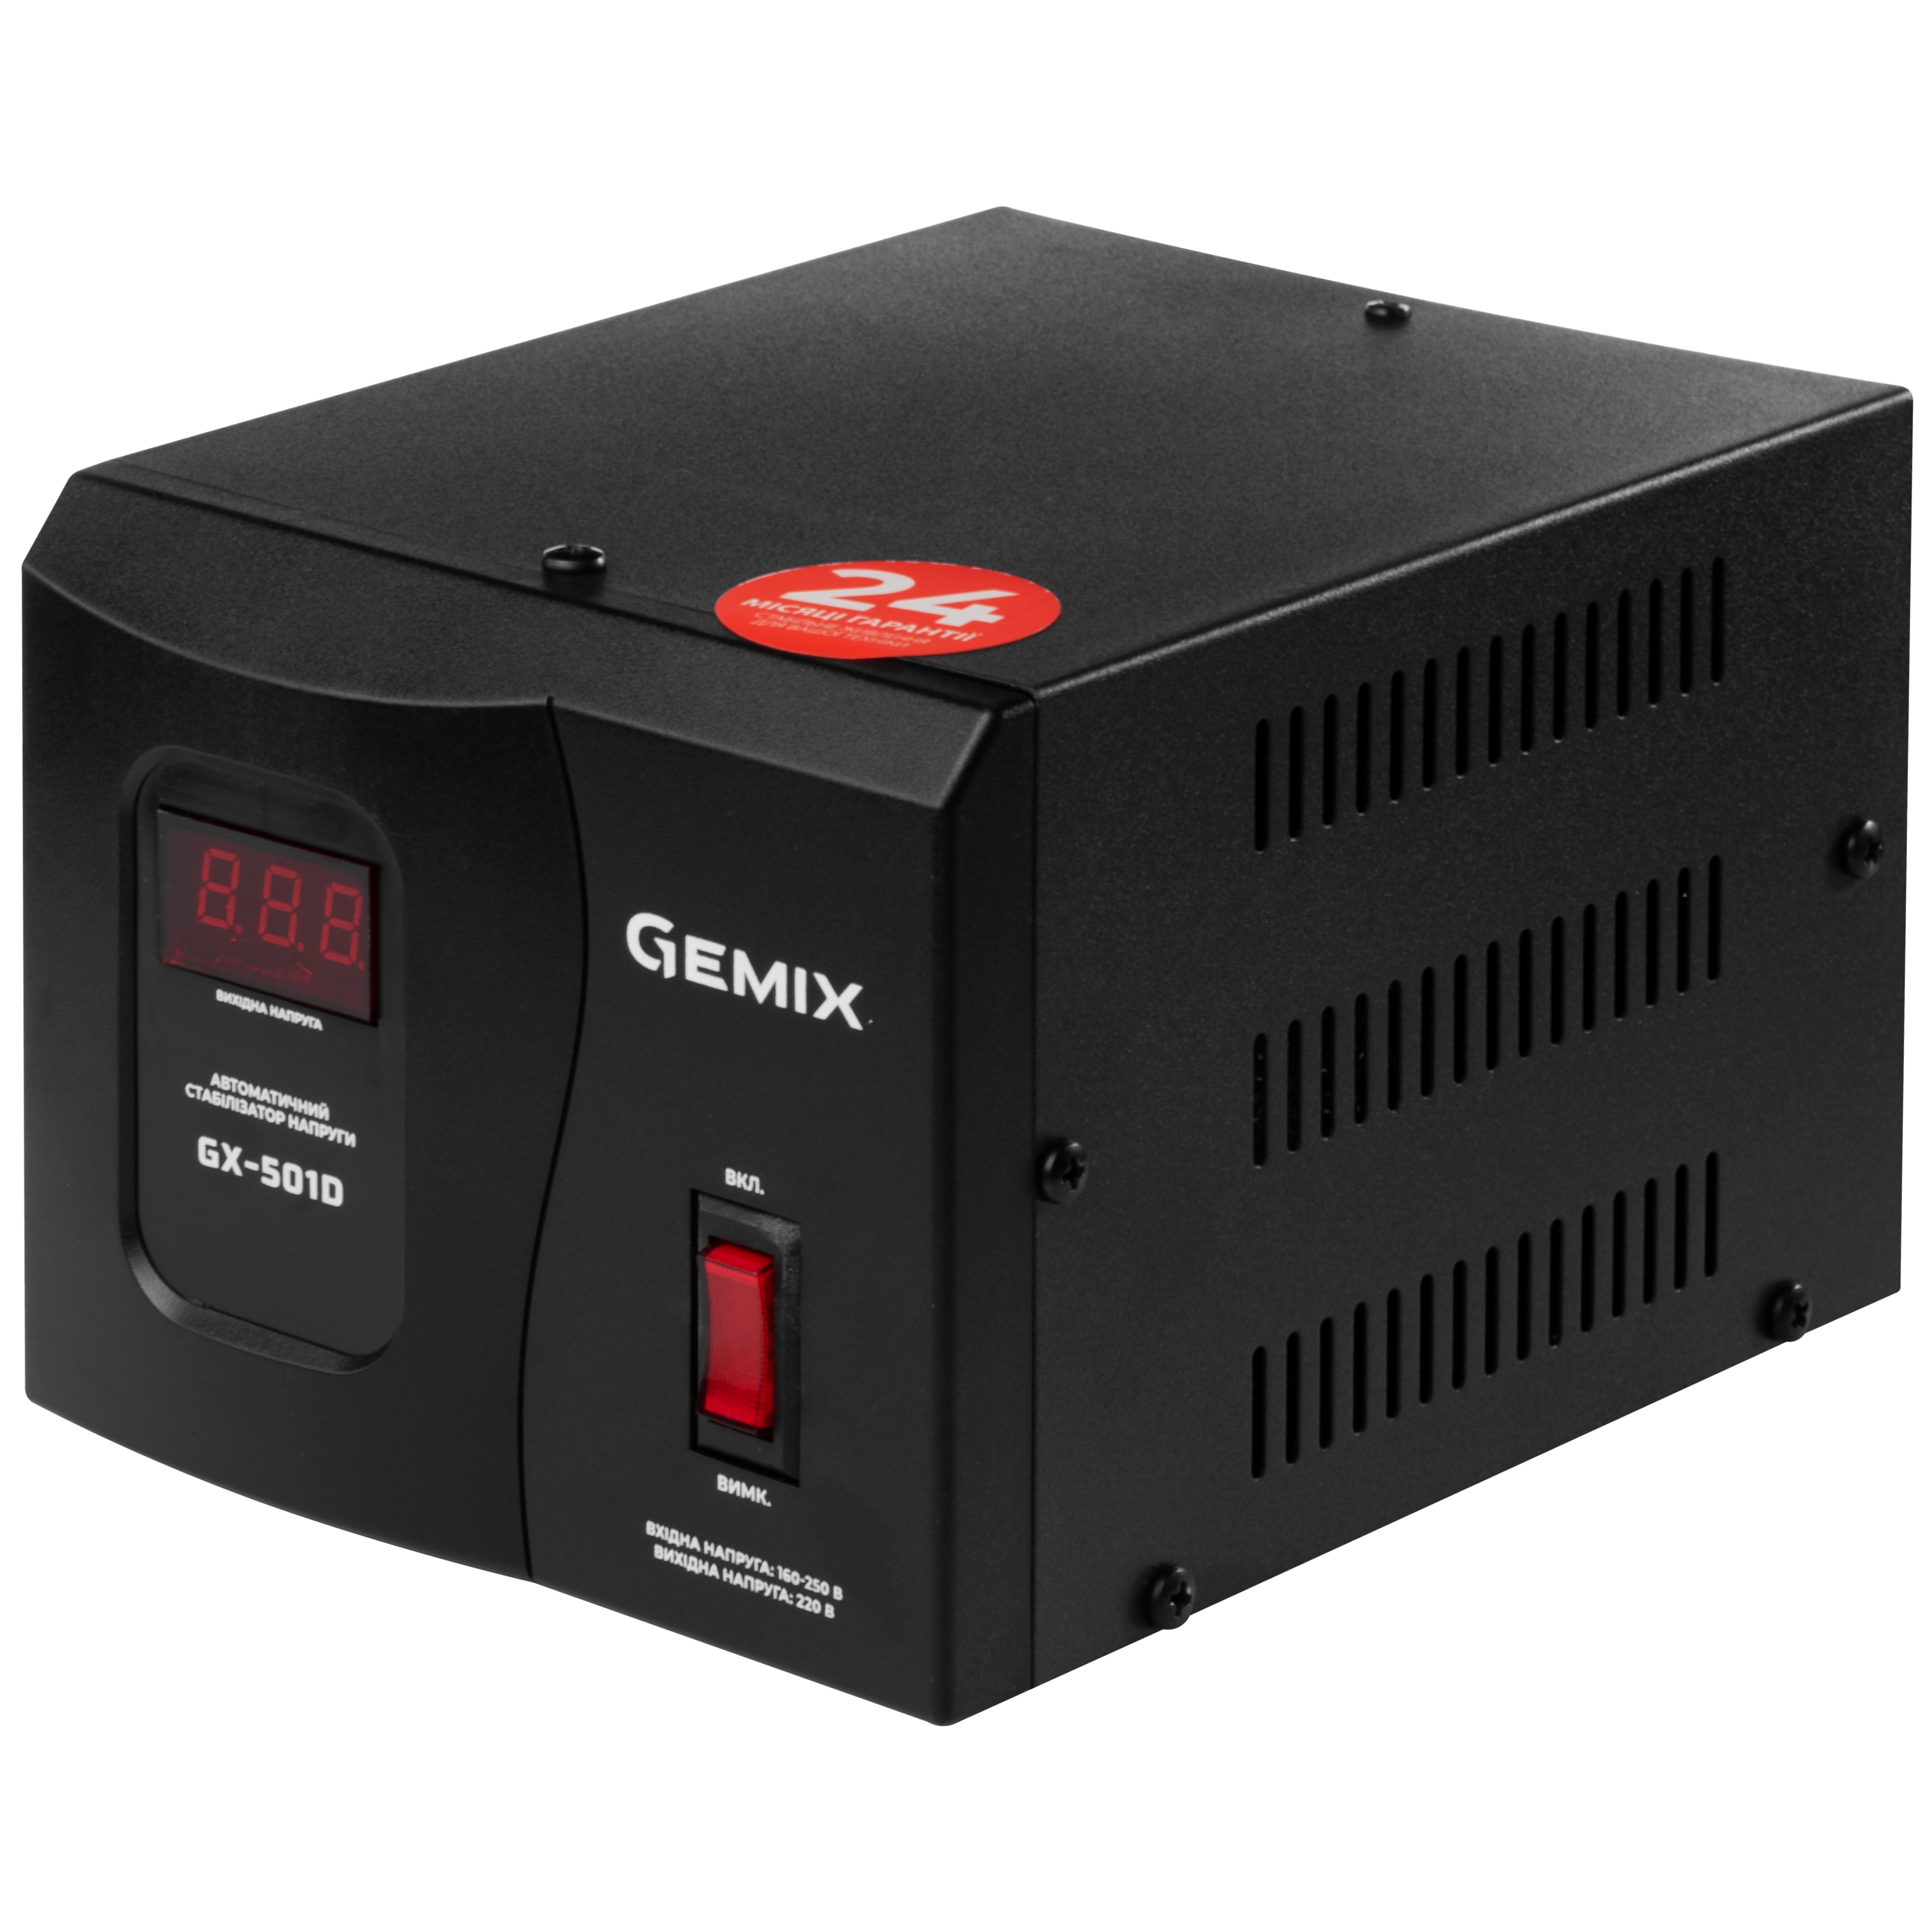 Стабилизатор напряжения Gemix GX-501D